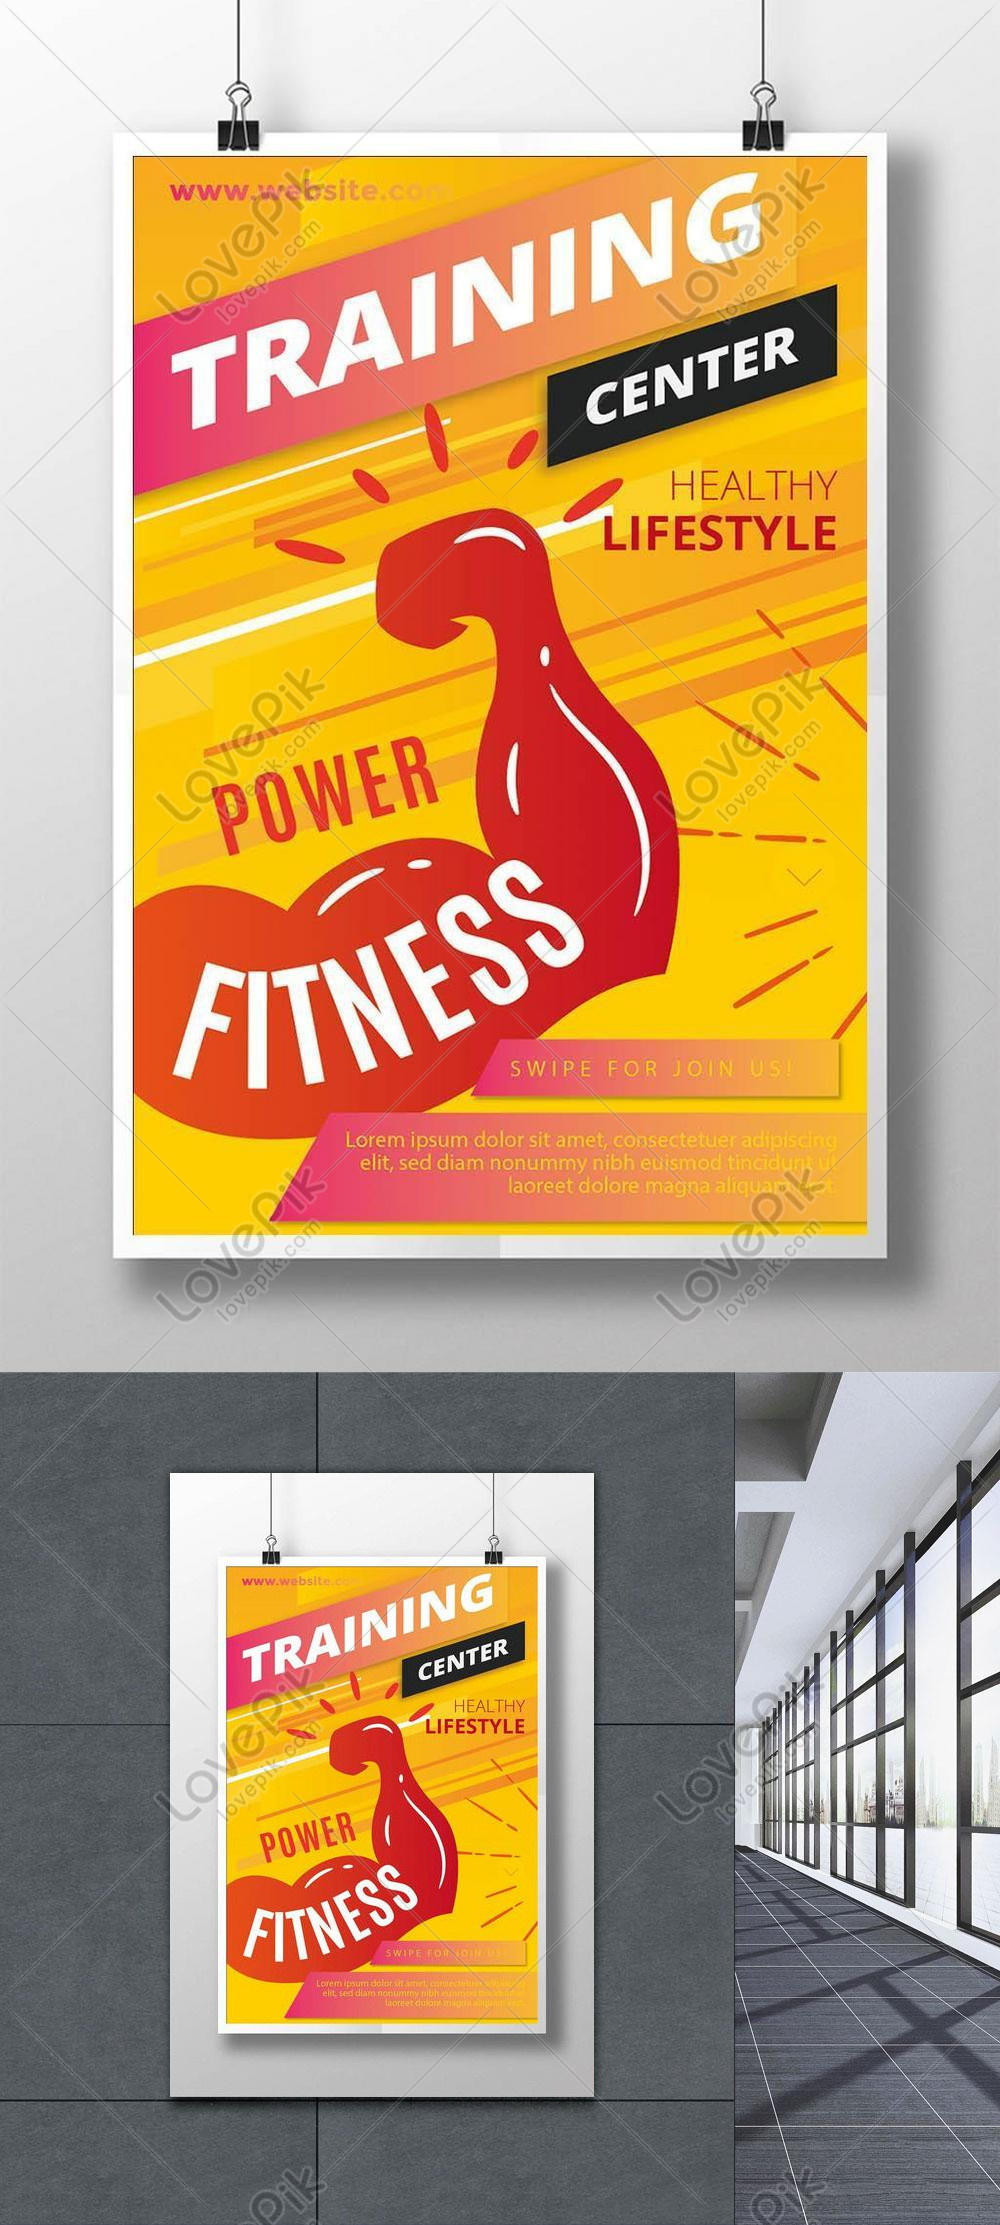 Template Poster Gym Olahraga Yang Sehat Untuk Diunduh Gratis Lovepik